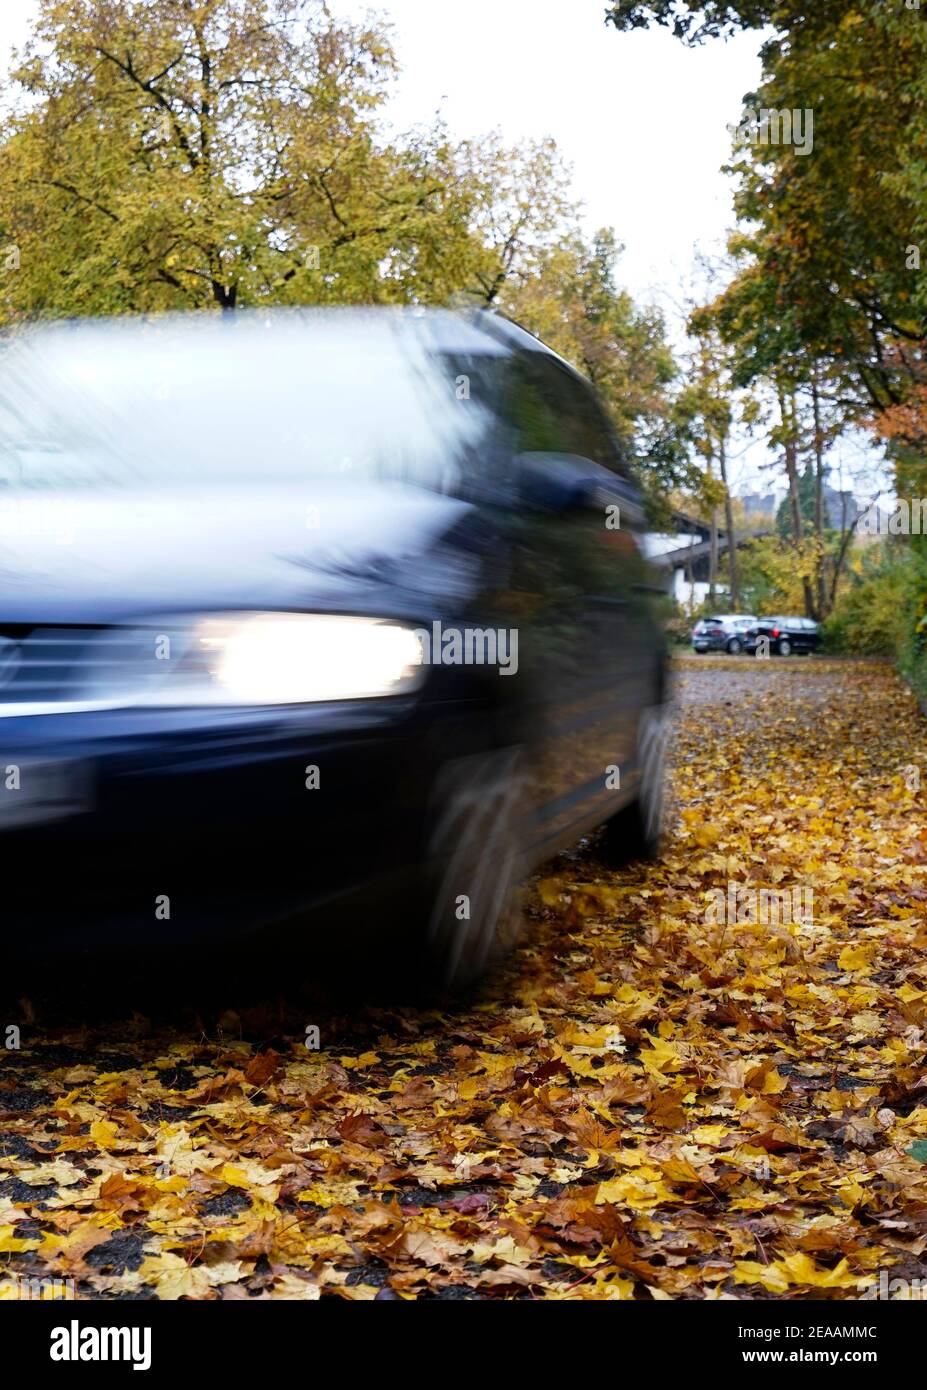 Germania, Baviera, foglie autunnali sulla strada, strada di campagna, alberi decidui, auto in movimento, rischio di scivolamento Foto Stock